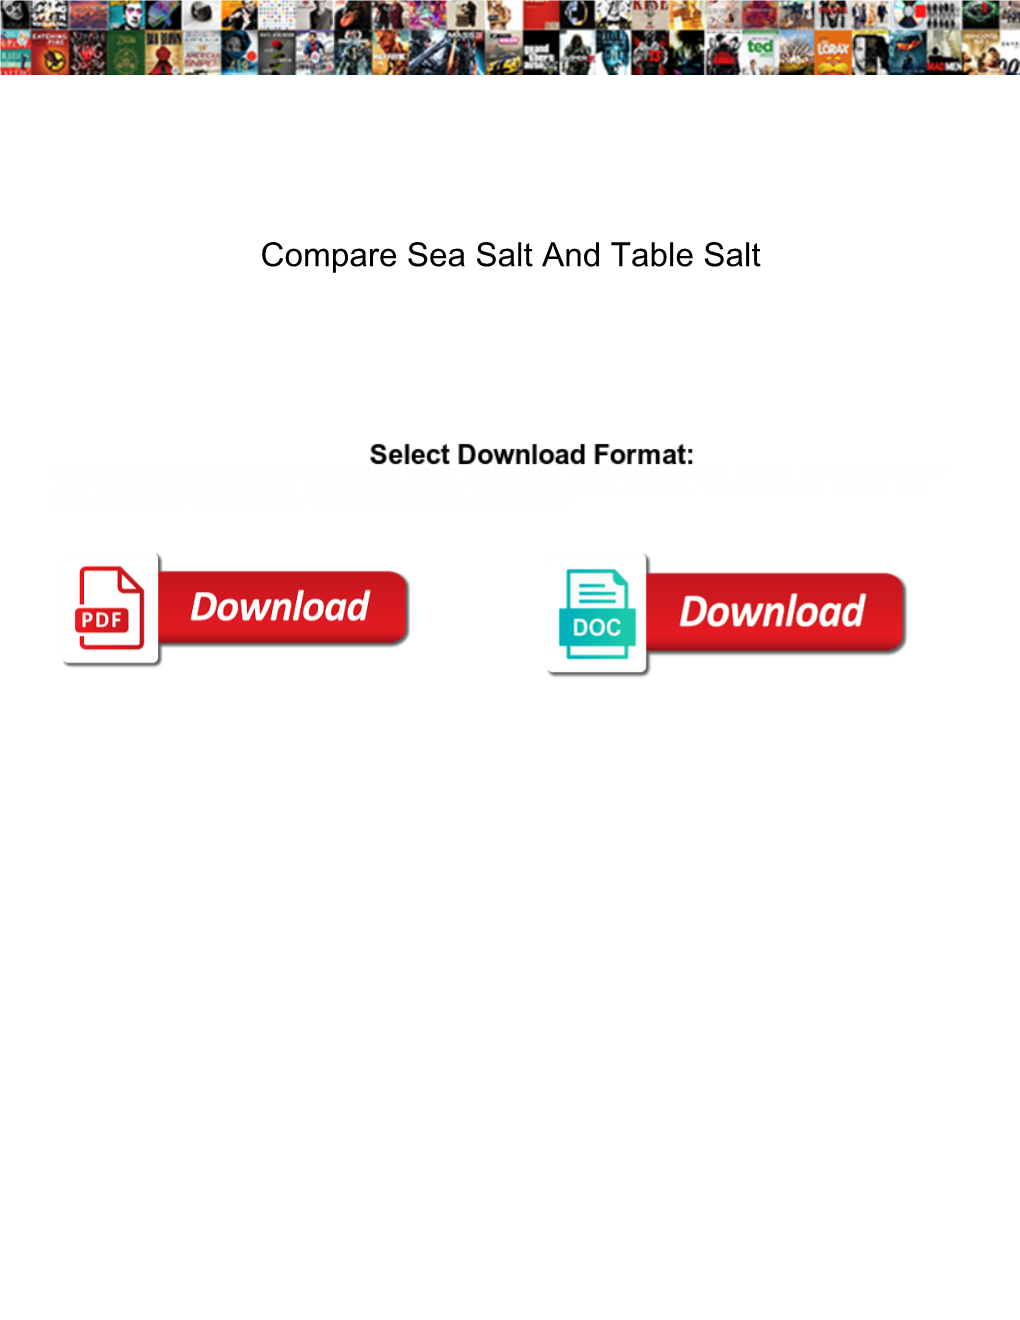 Compare Sea Salt and Table Salt